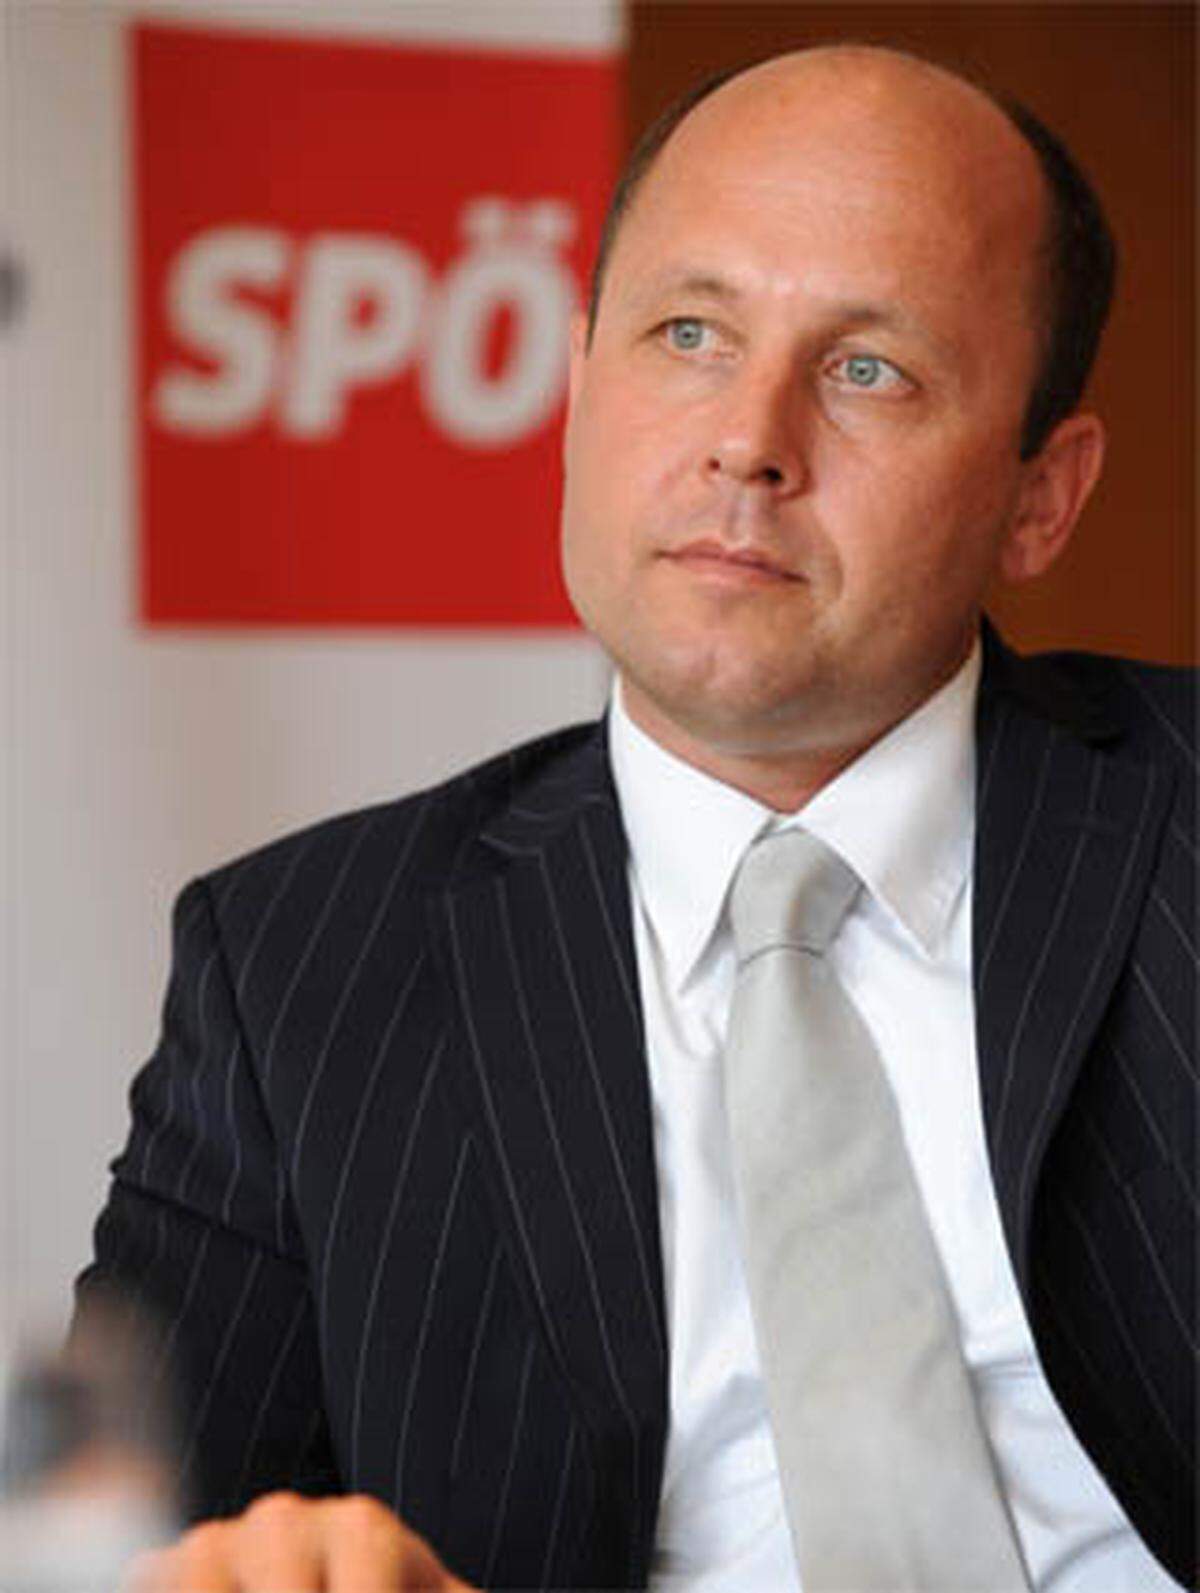 Ritsch (geboren 1968) ist ehemaliger Gendarm und karenzierter Gewerkschaftssekretär. Er stieg bereits mit 18 Jahren aktiv in die Politik ein. 1995 wurde Ritsch Wohnungs- und Jugendstadtrat von Bregenz, seit 2000 hat er noch das Ressort Wohnungswesen inne. 2004 wurde er Abgeordneter zum Landtag, im Frühjahr 2005 kam er als Spitzenkandidat der Bregenzer SPÖ bei der Gemeindevertretungswahl der ÖVP gefährlich nahe. Im September 2007 wurde Ritsch Klubobmann, zwei Monate später übernahm er auch das Amt des Parteivorsitzenden. Ritsch ist Vater zweier Töchter.